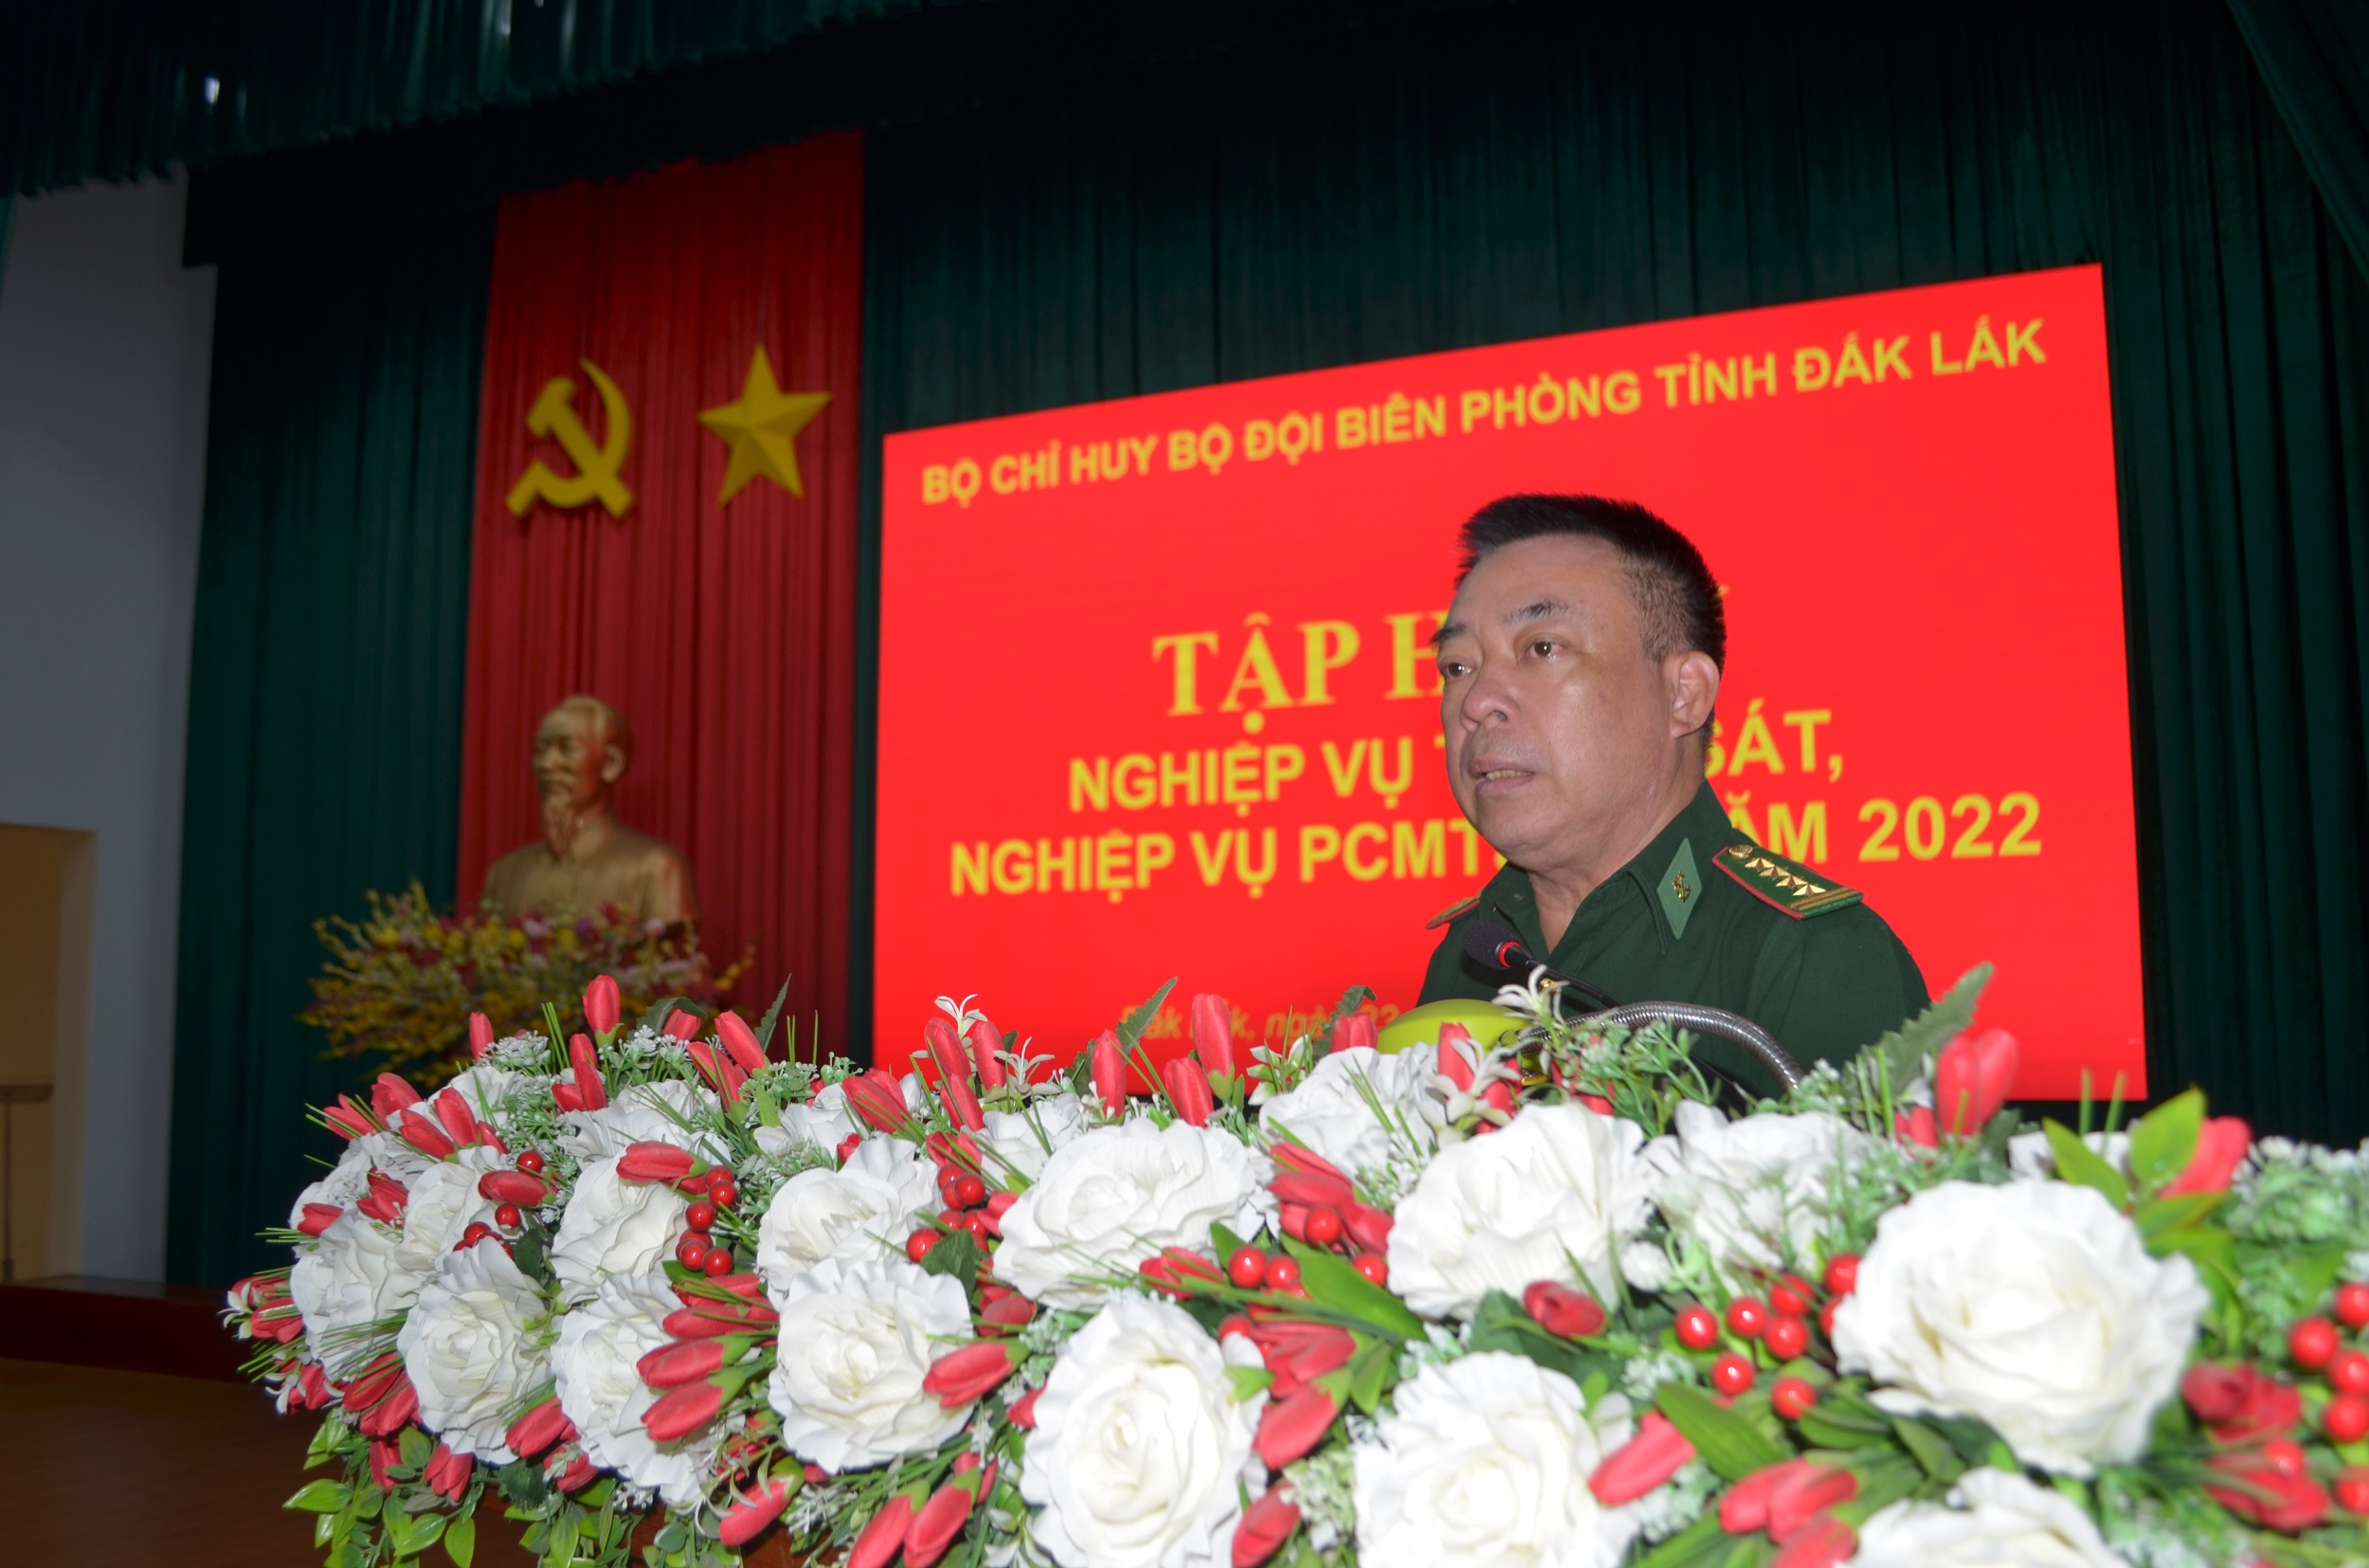 Bộ đội Biên phòng tỉnh Đắk Lắk tập huấn nghiệp vụ trinh sát và phòng, chống ma túy và tội phạm